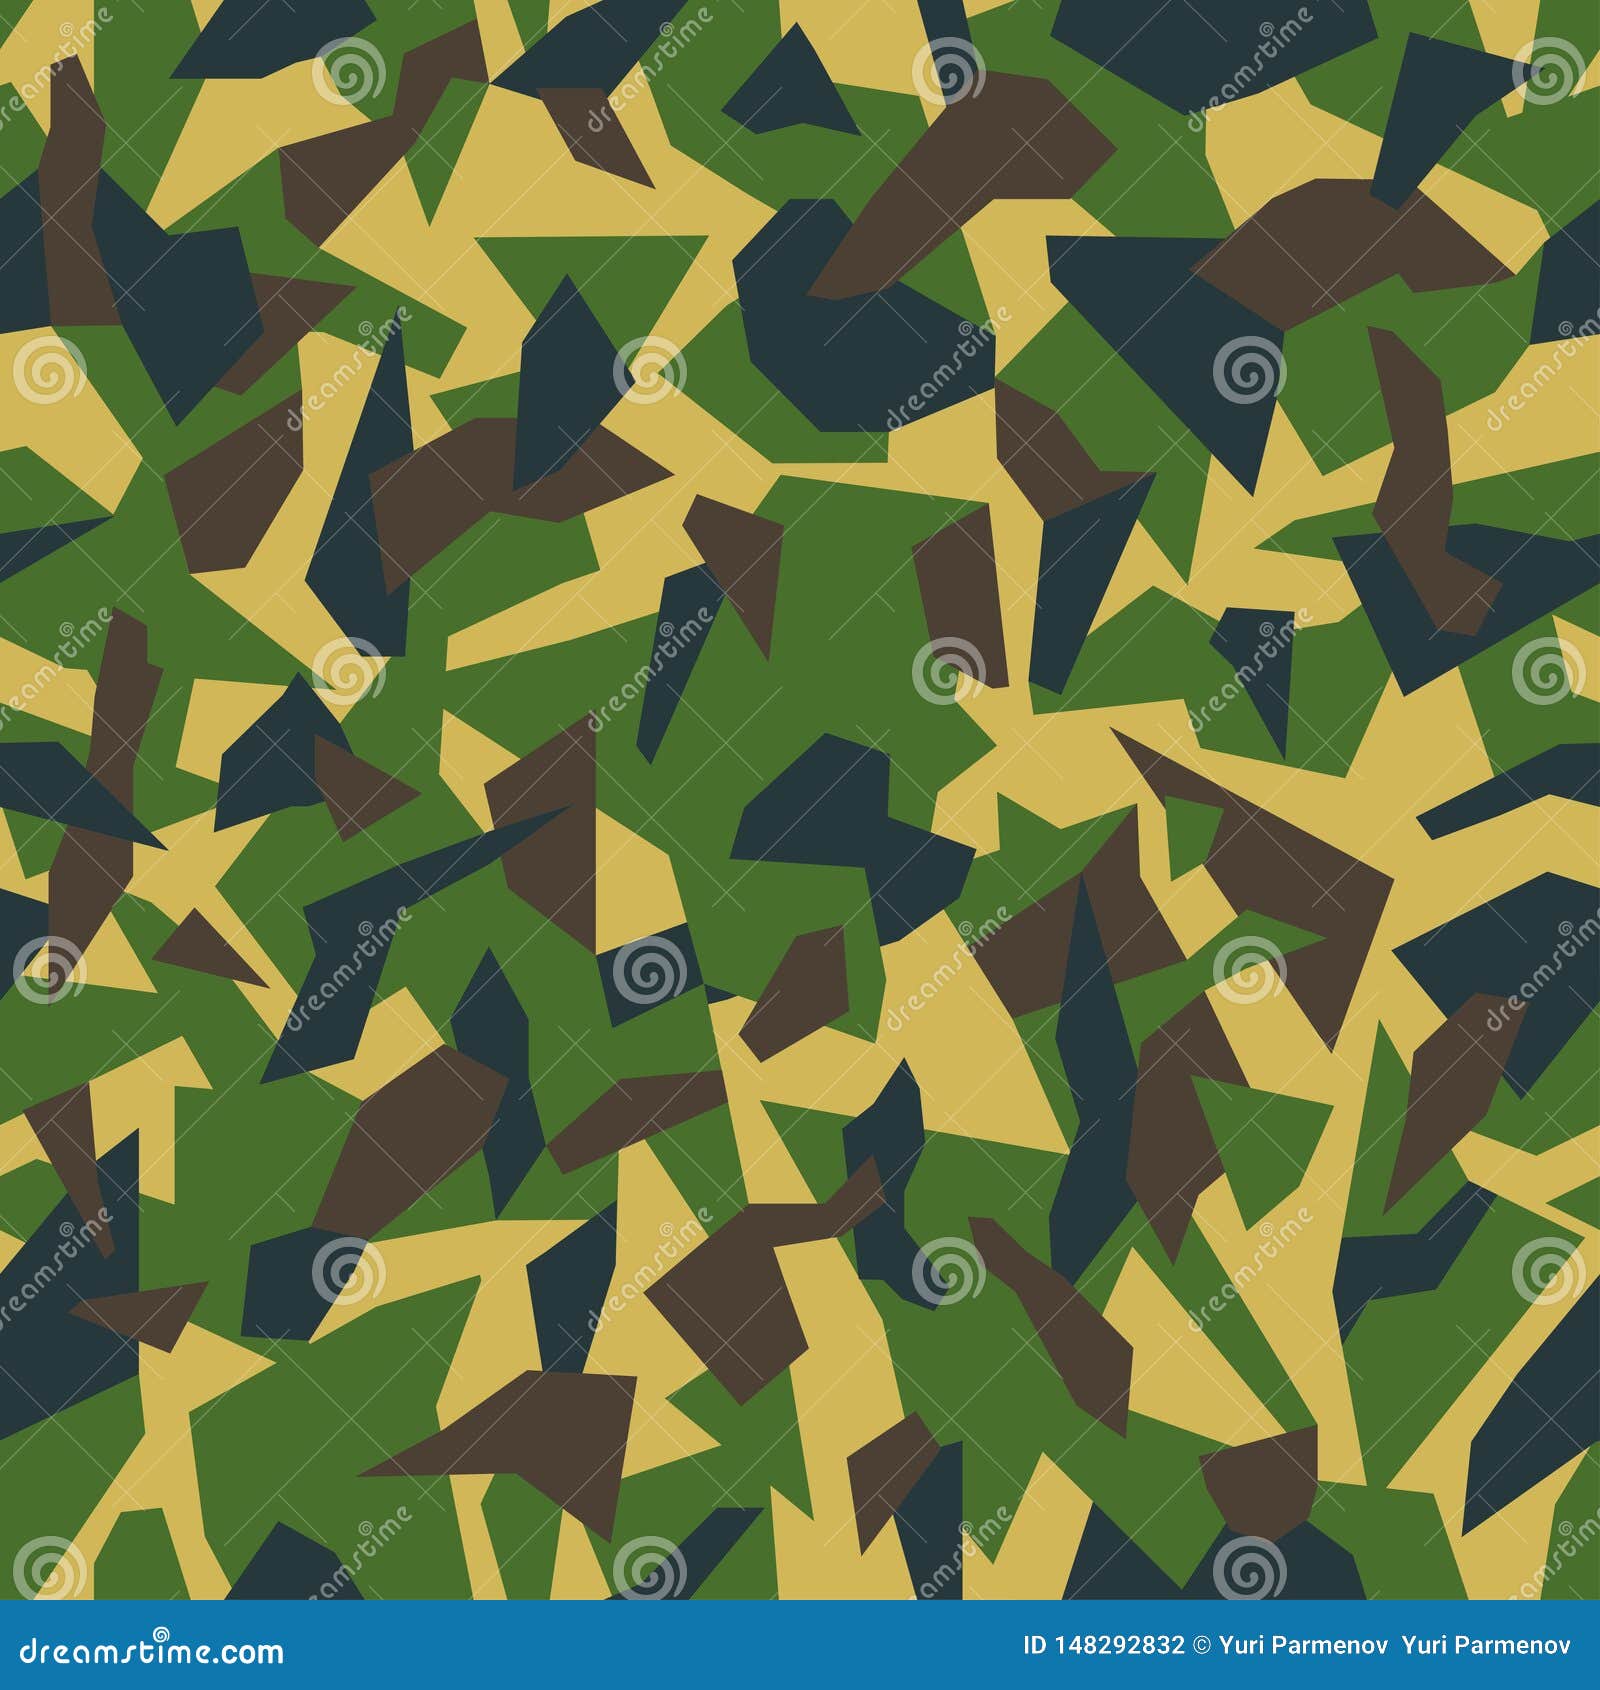 Geometric Camouflage Seamless Pattern Background. Classic Khaki ...